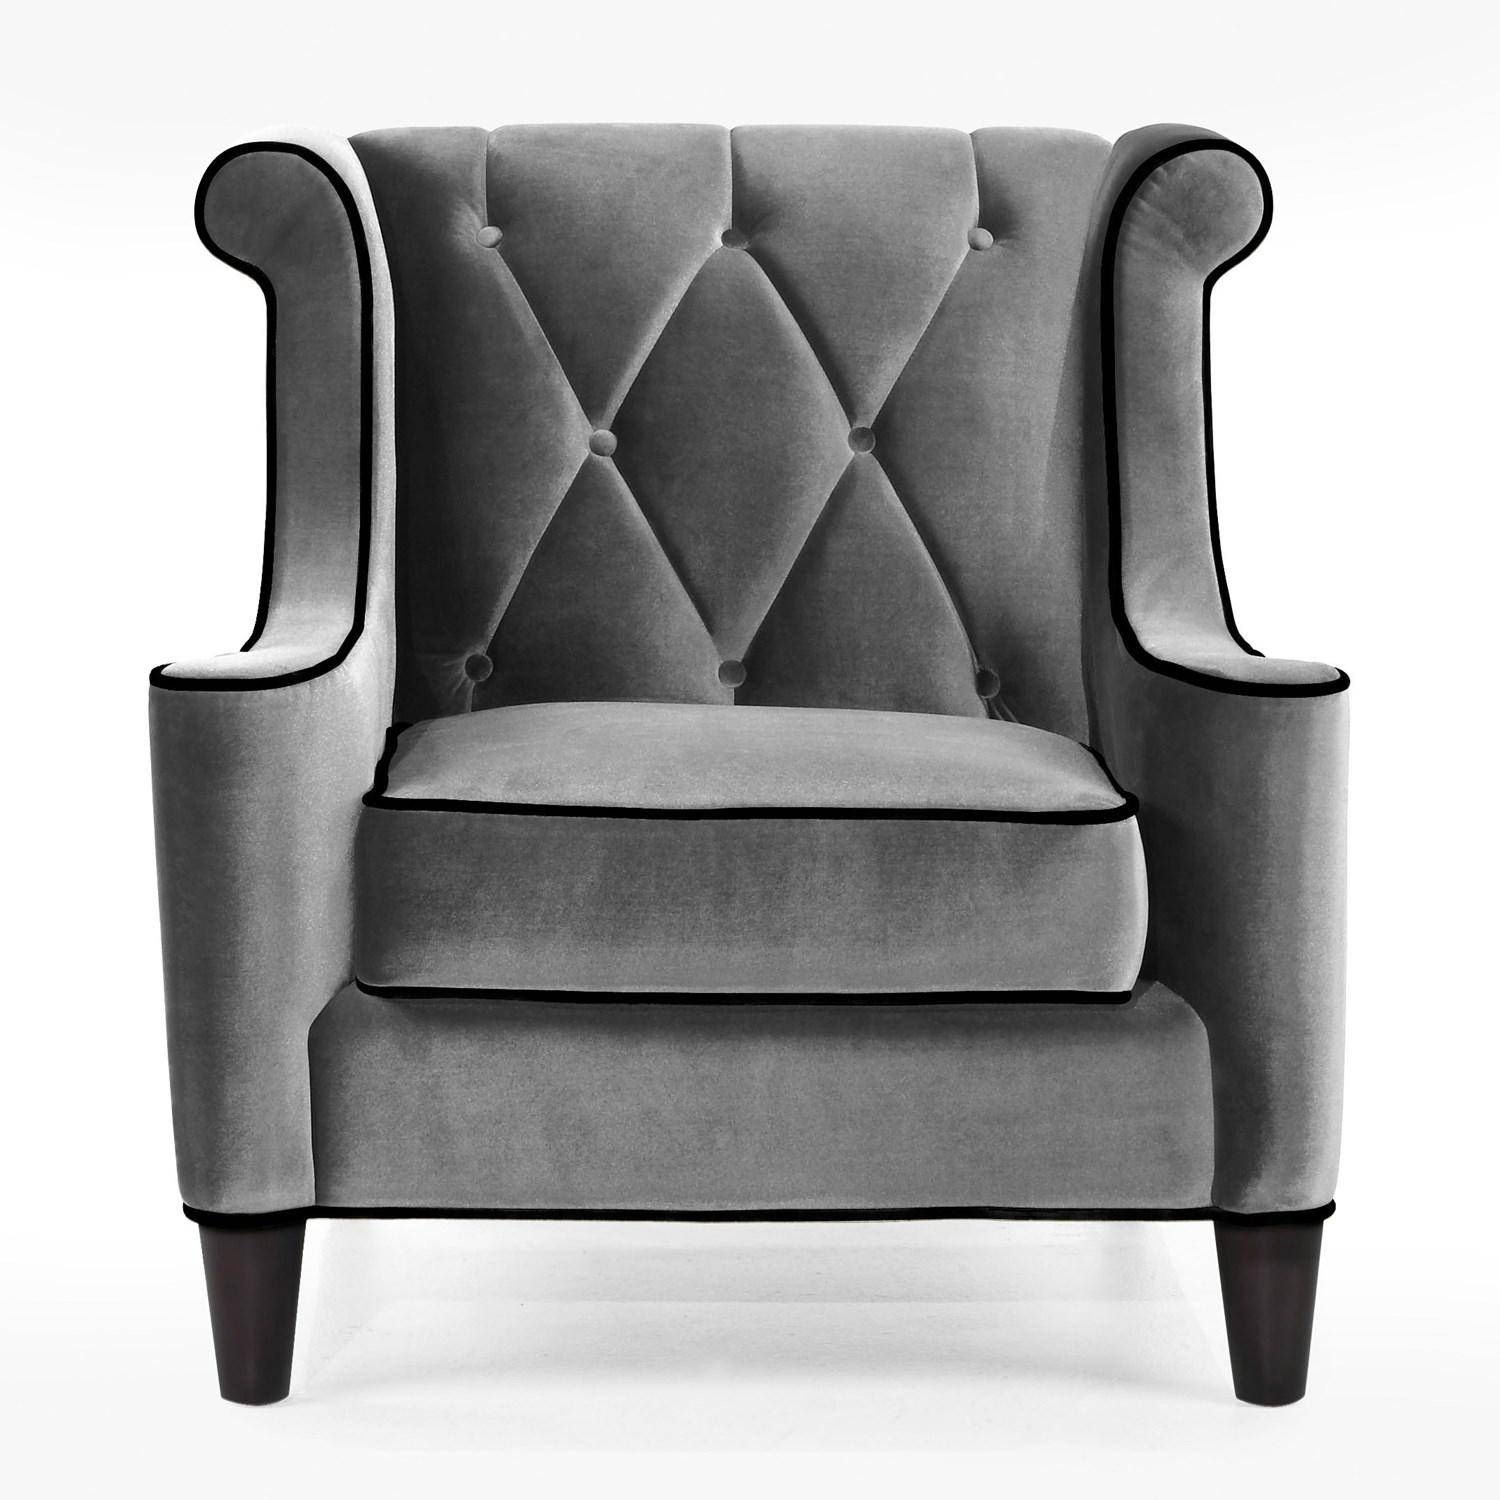 20 Collection Of Barrister Velvet Sofas | Sofa Ideas For Barrister Velvet Sofas (View 13 of 15)